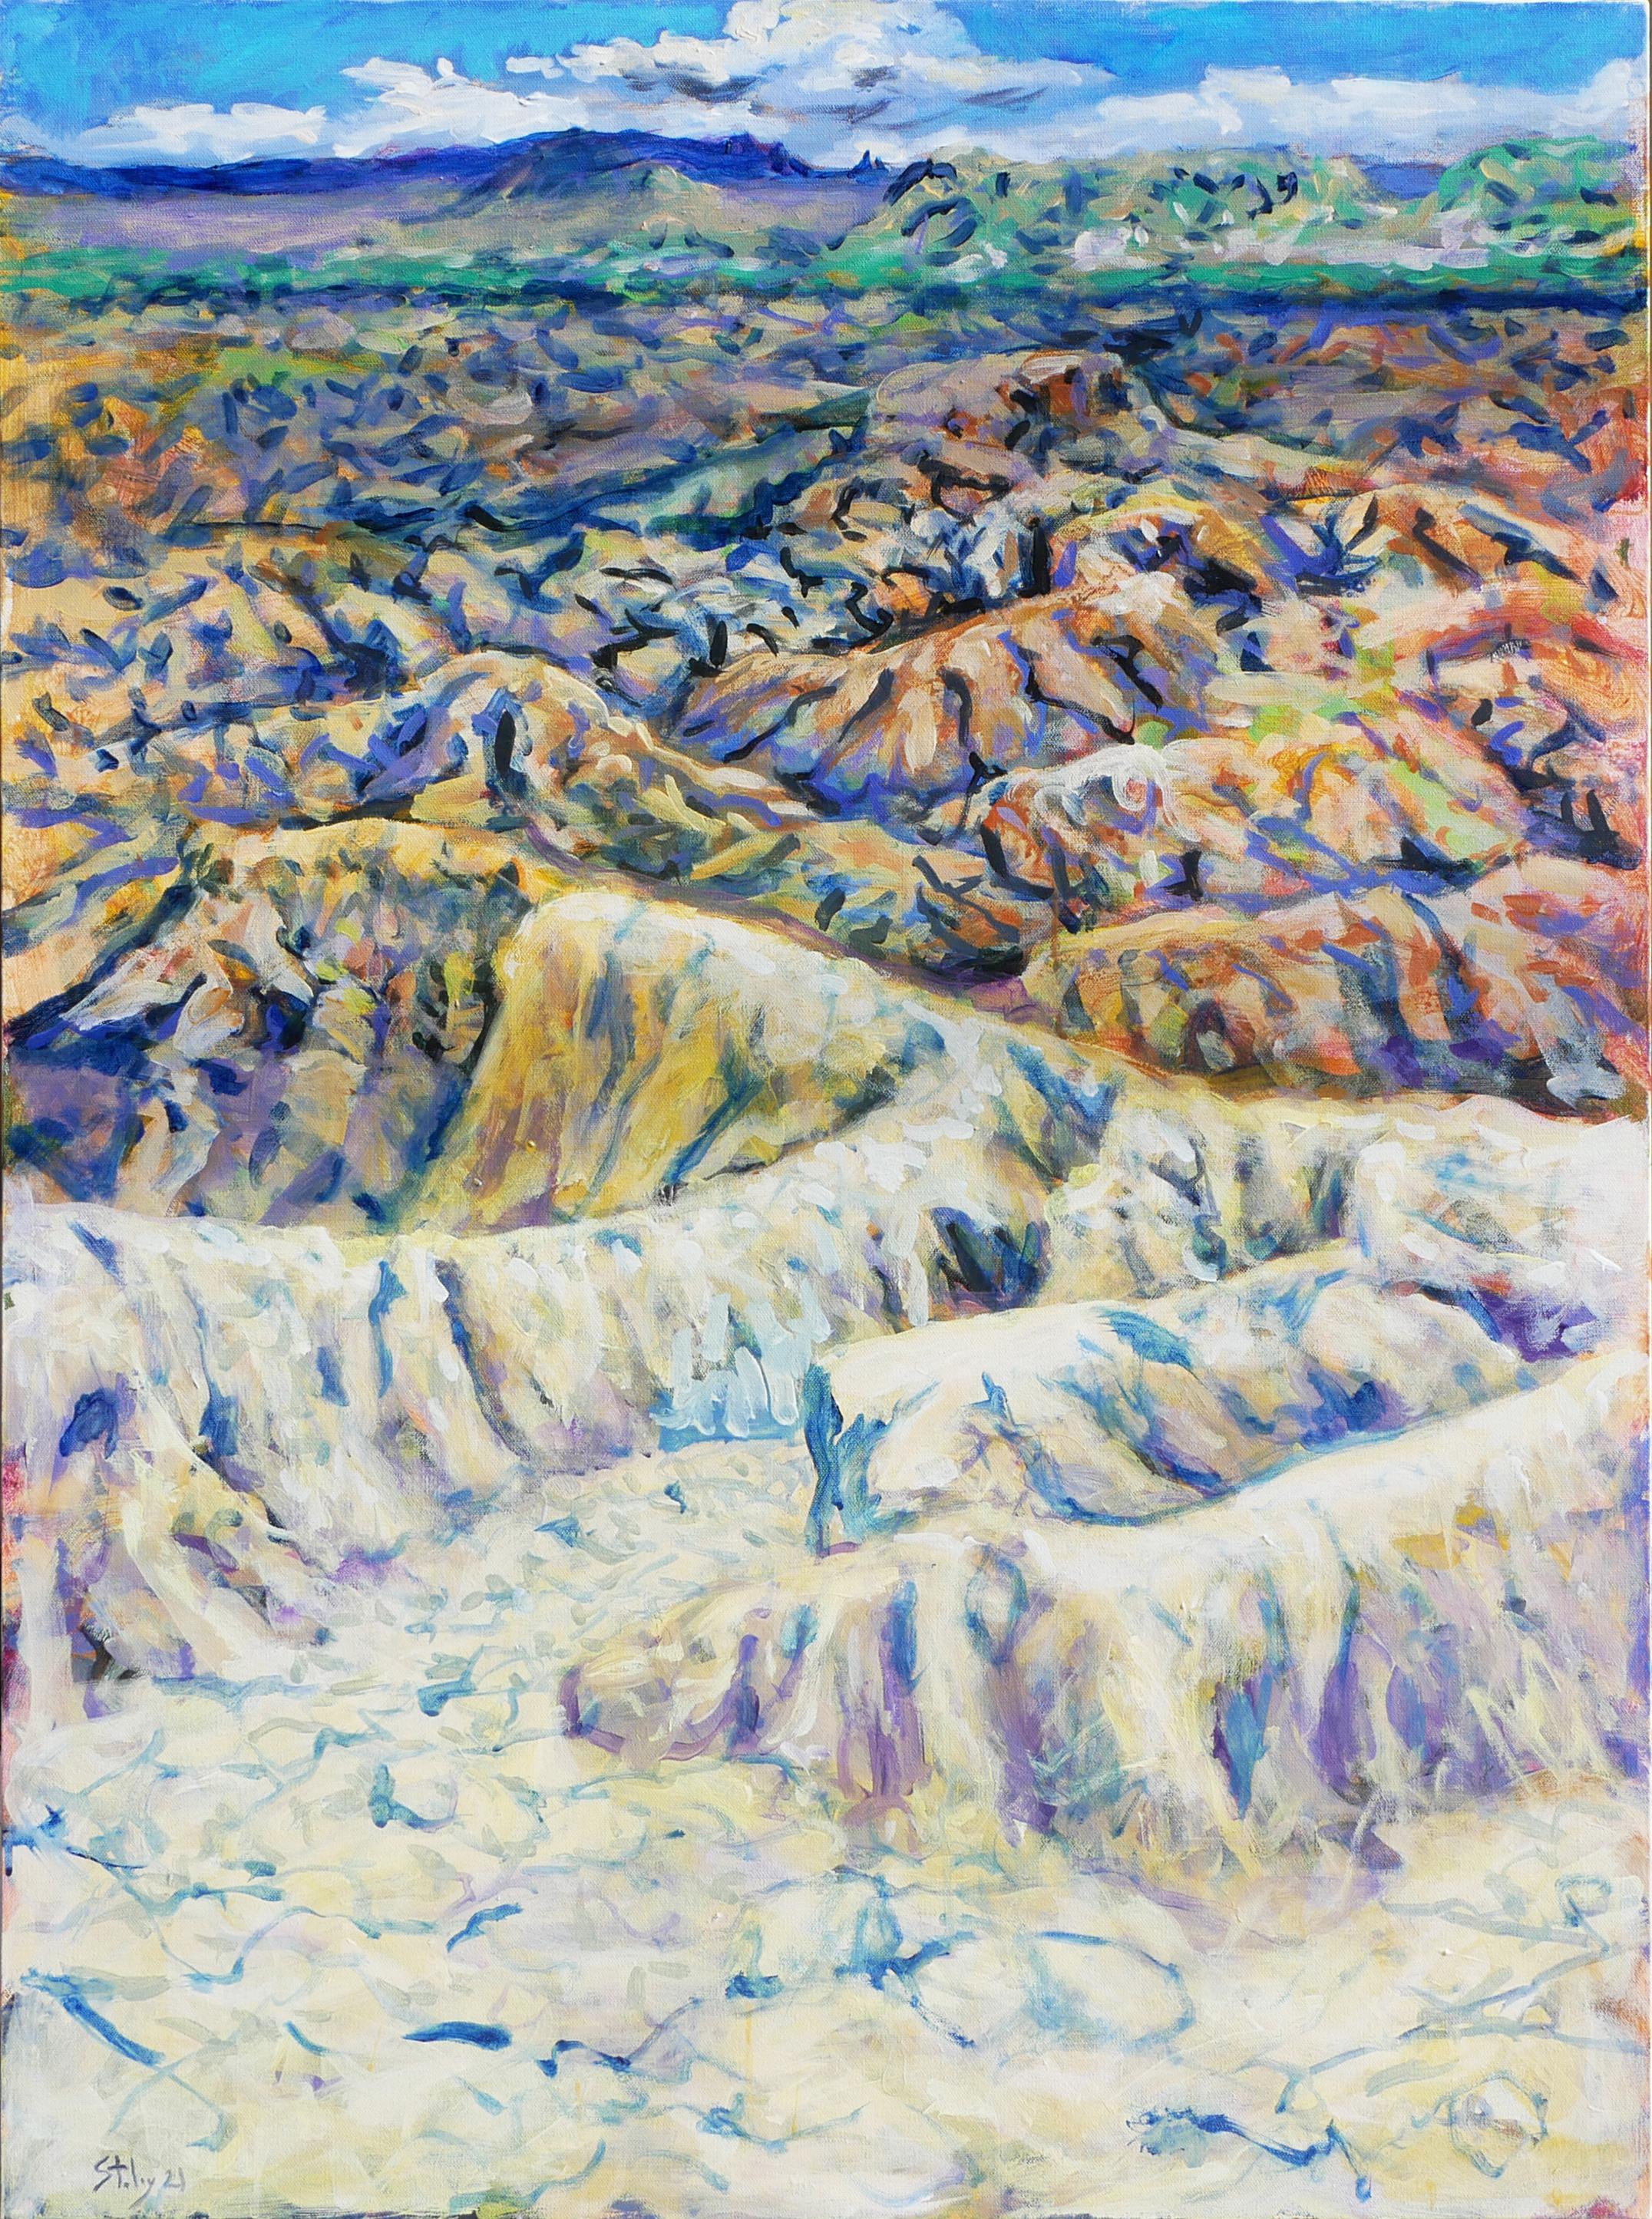 Landscape Painting Earl Staley - Terlingua Canyon 1 - Peinture de paysage abstrait contemporain aux tons pastel